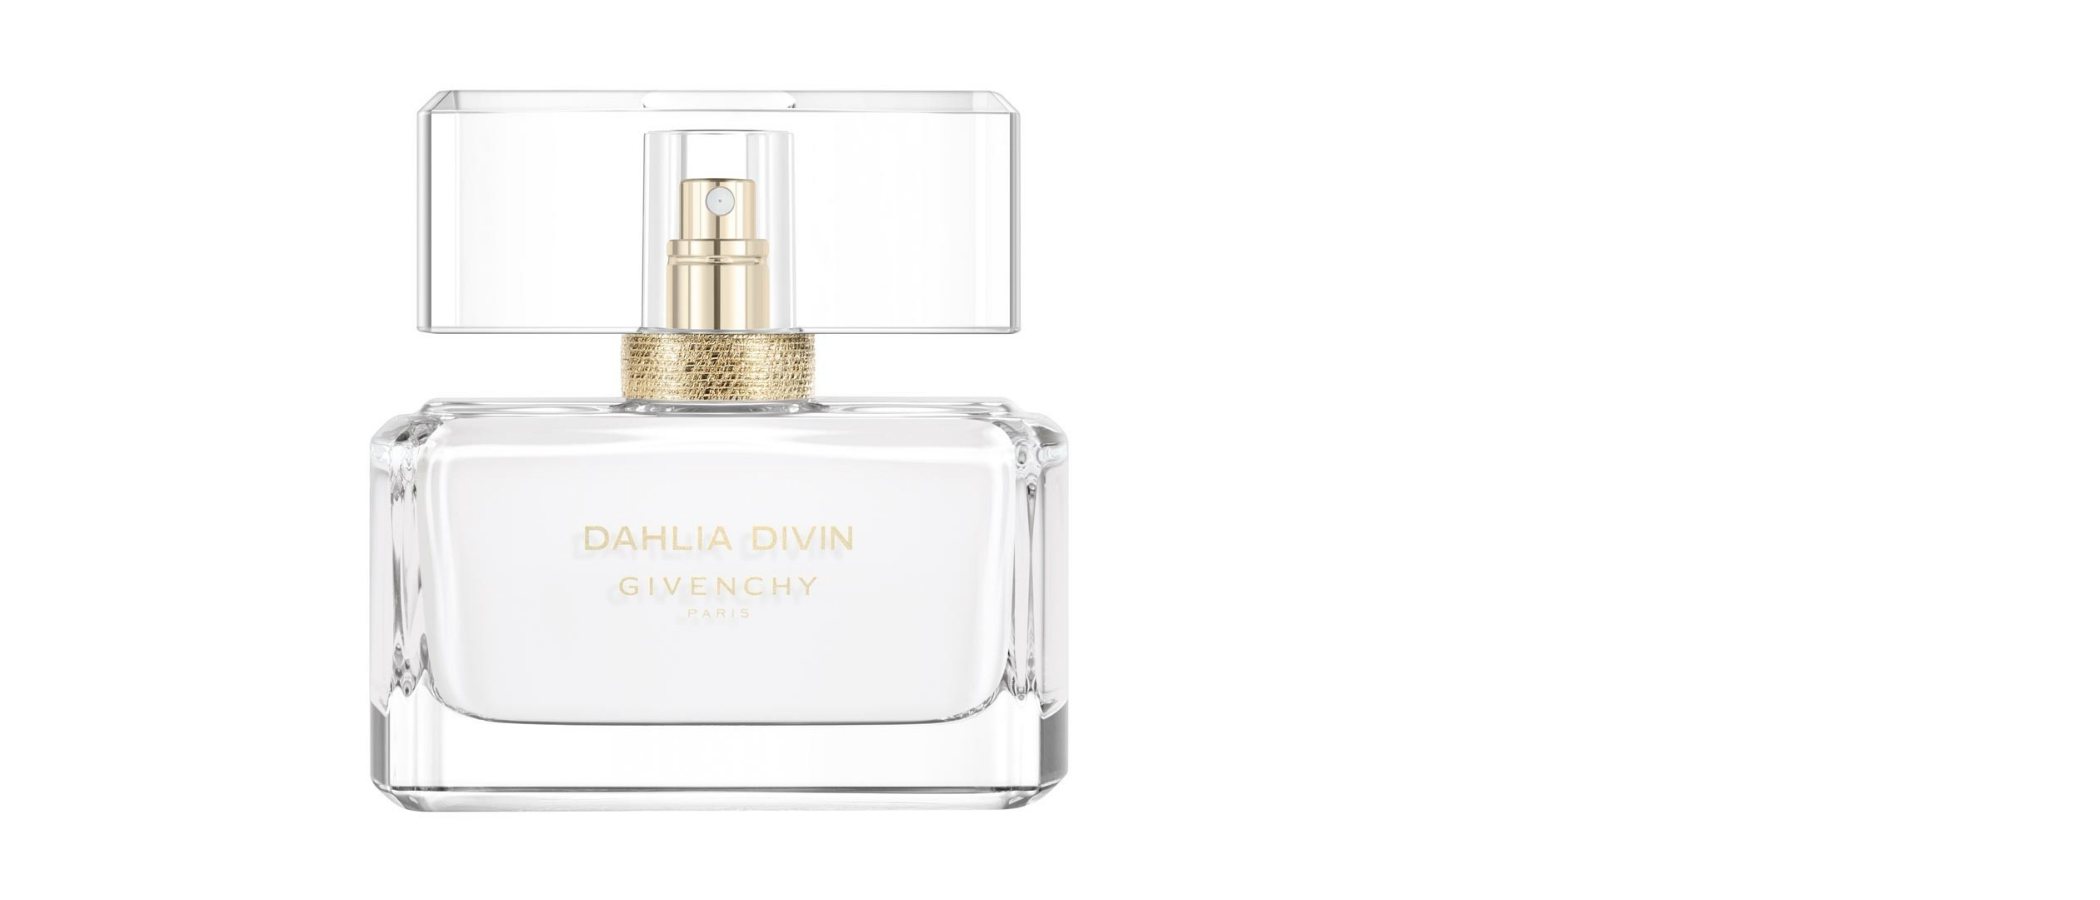 'Dahlia Divin Eau Initiale', la nueva fragancia femenina de Givenchy